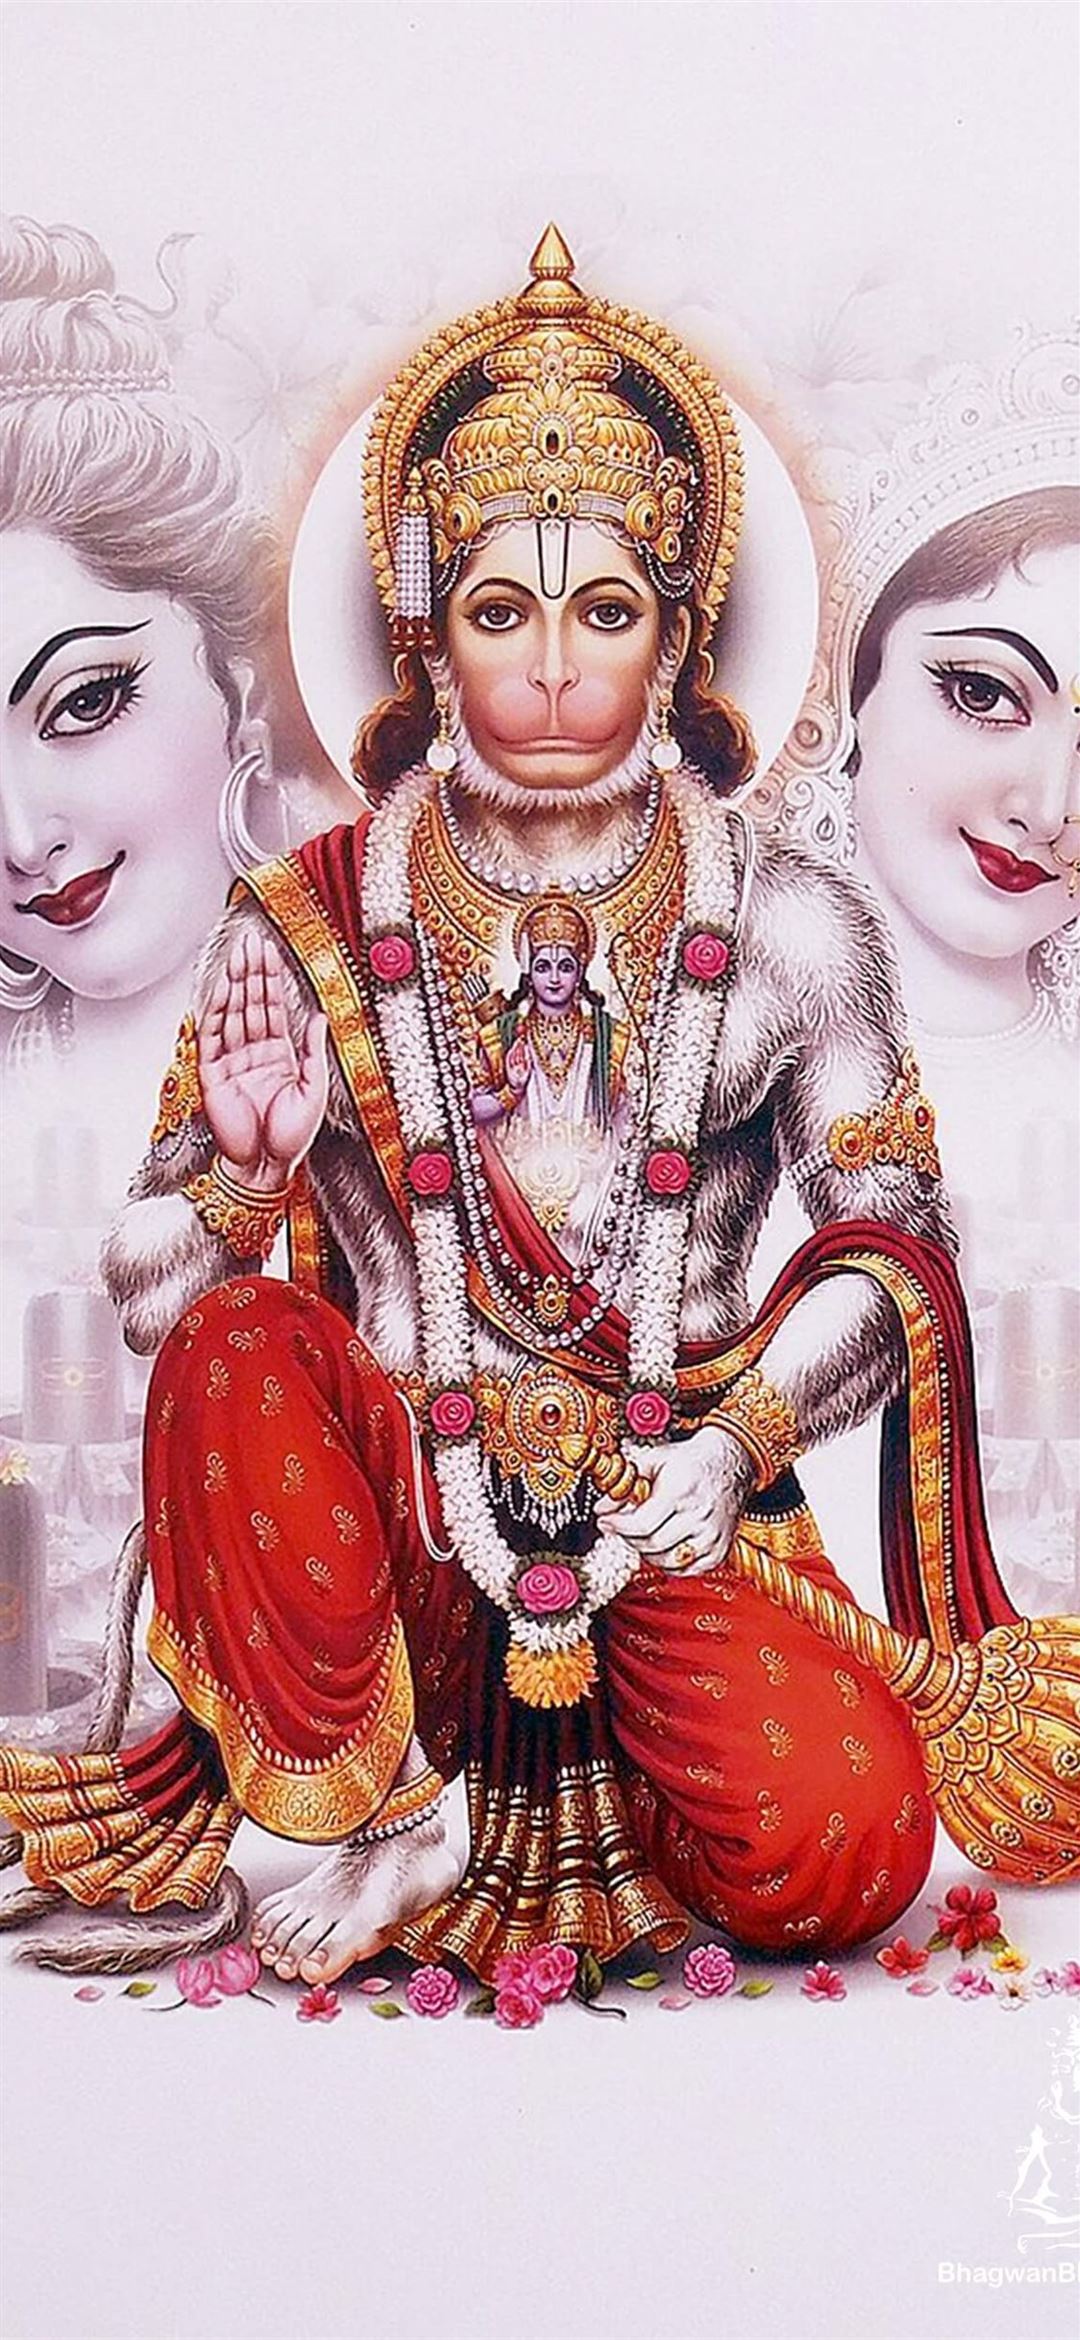 Hanuman Ram Cave iPhone Wallpaper Free Download